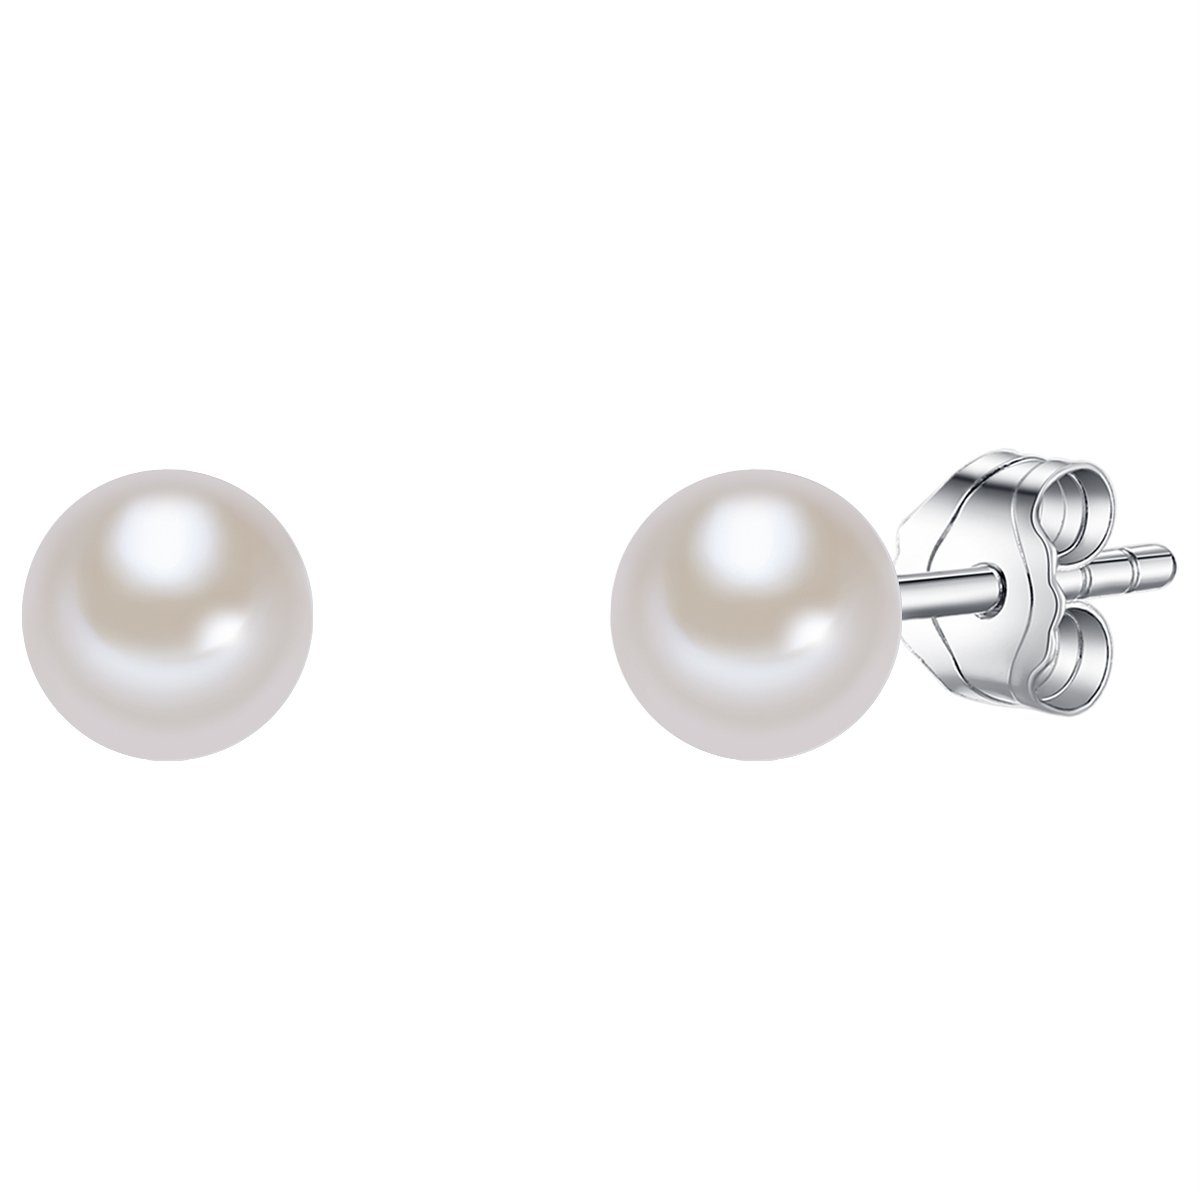 Valero Pearls Сережки з бісеру Сережки-гвоздики aus Süßwasserzuchtperlen, in weiß, aus Süßwasser-Zuchtperlen